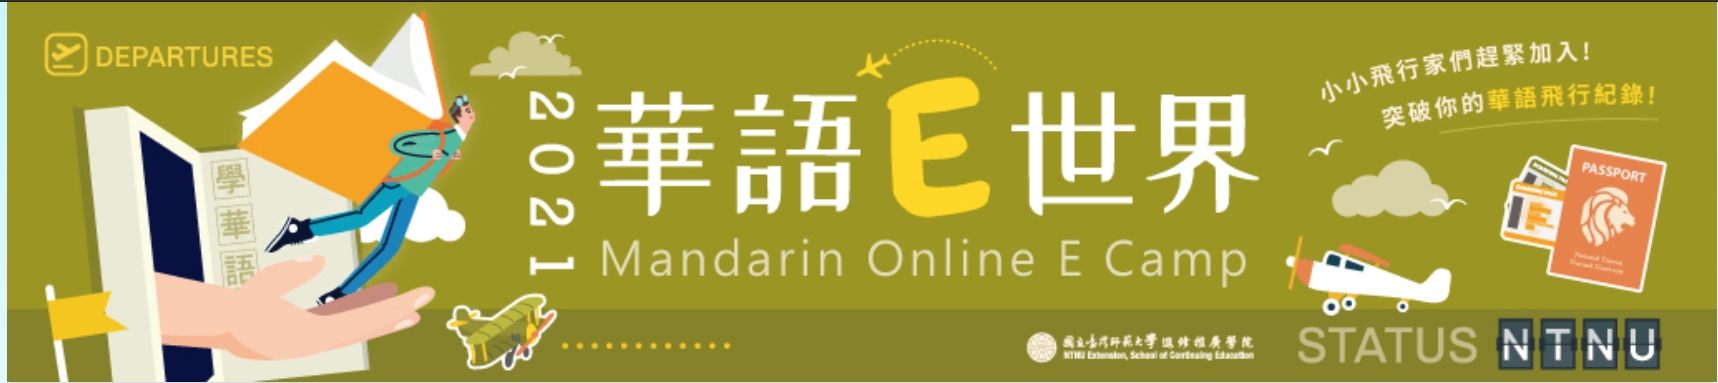 【17.6.2021】คลาสเรียนภาษาจีนออนไลน์ 2021 Mandarin Online E Camp สำหรับเด็กที่อายุ 6-9 ปี